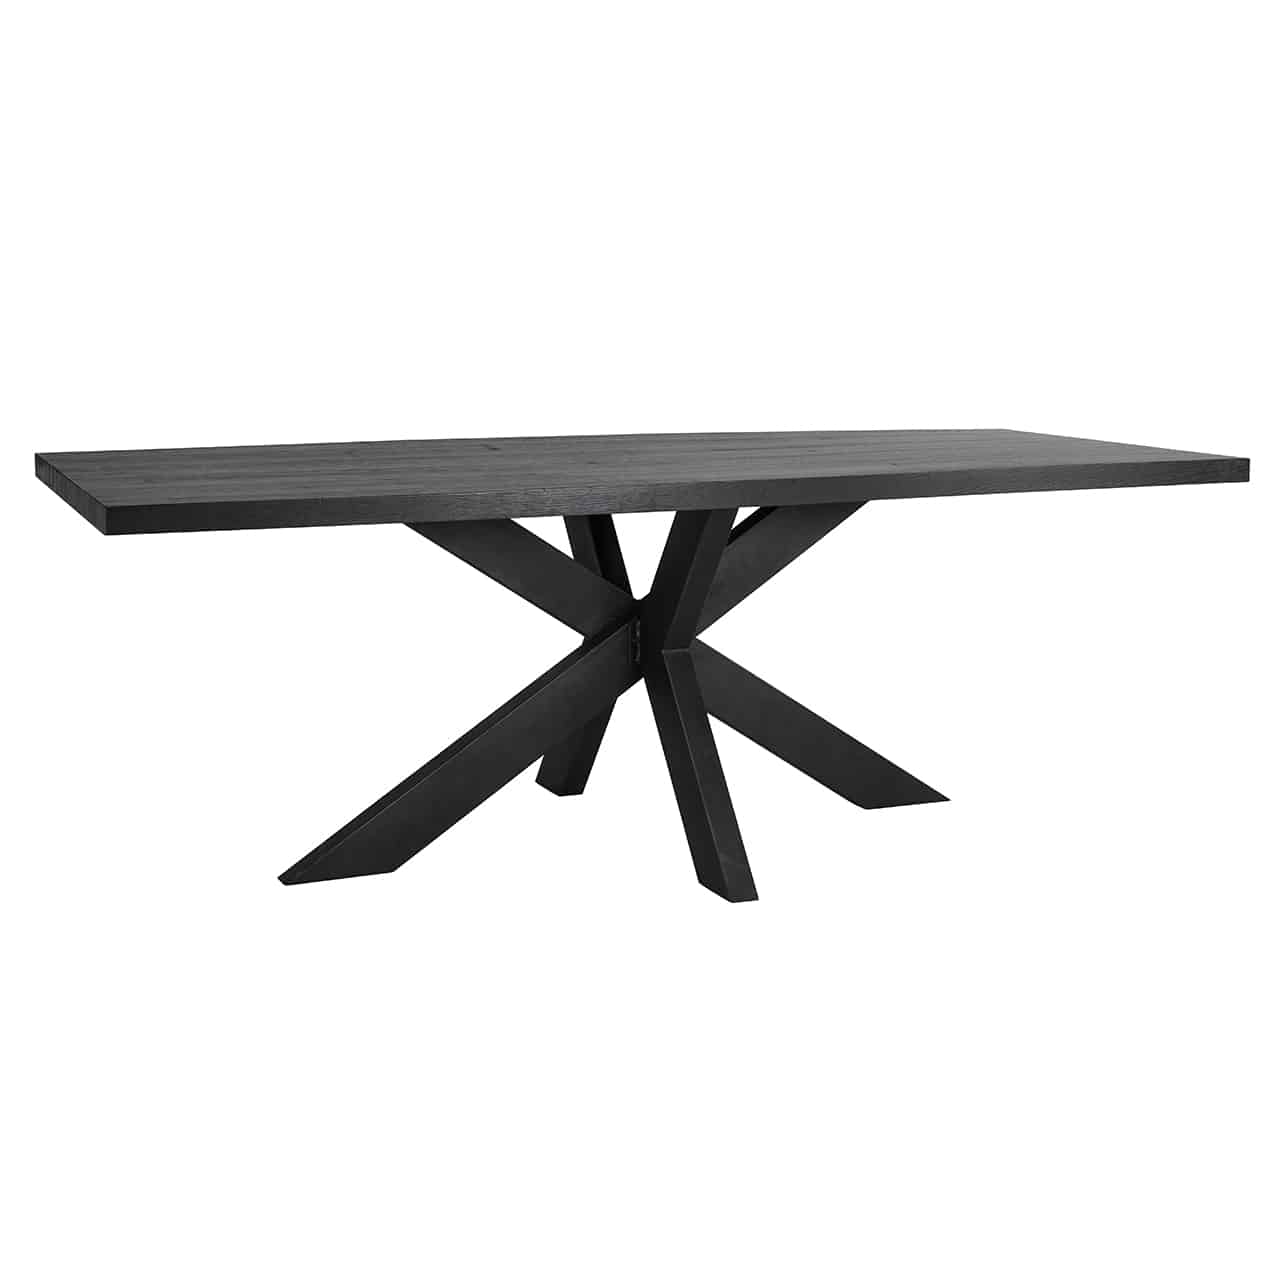 Rechteckige Tischplatte in schwarz; hier auf einem schwarzen Gestell aus sternförmige angeordneten  Planken.